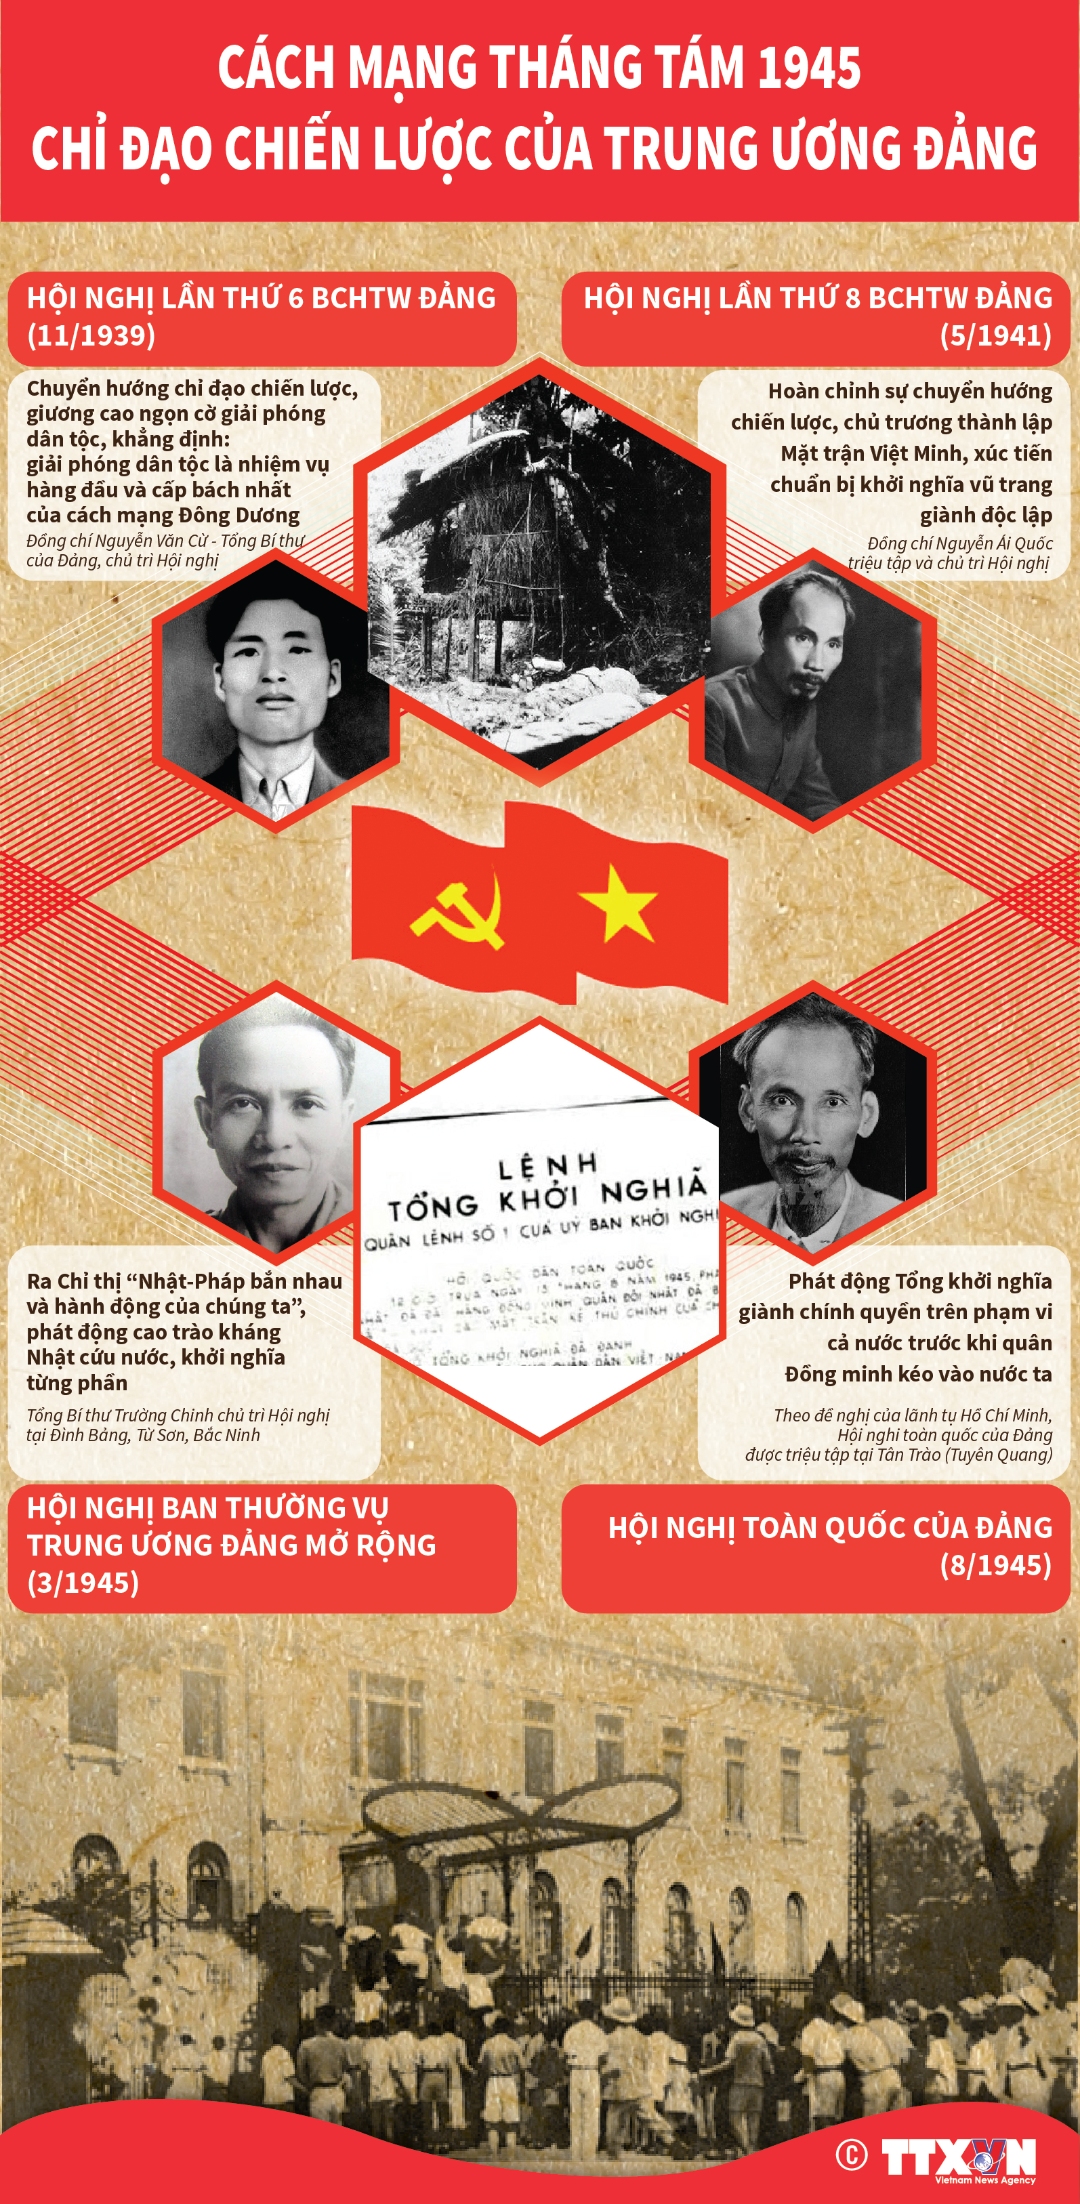 Cách mạng tháng Tám 1945: Chỉ đạo chiến lược của Trung ương Đảng